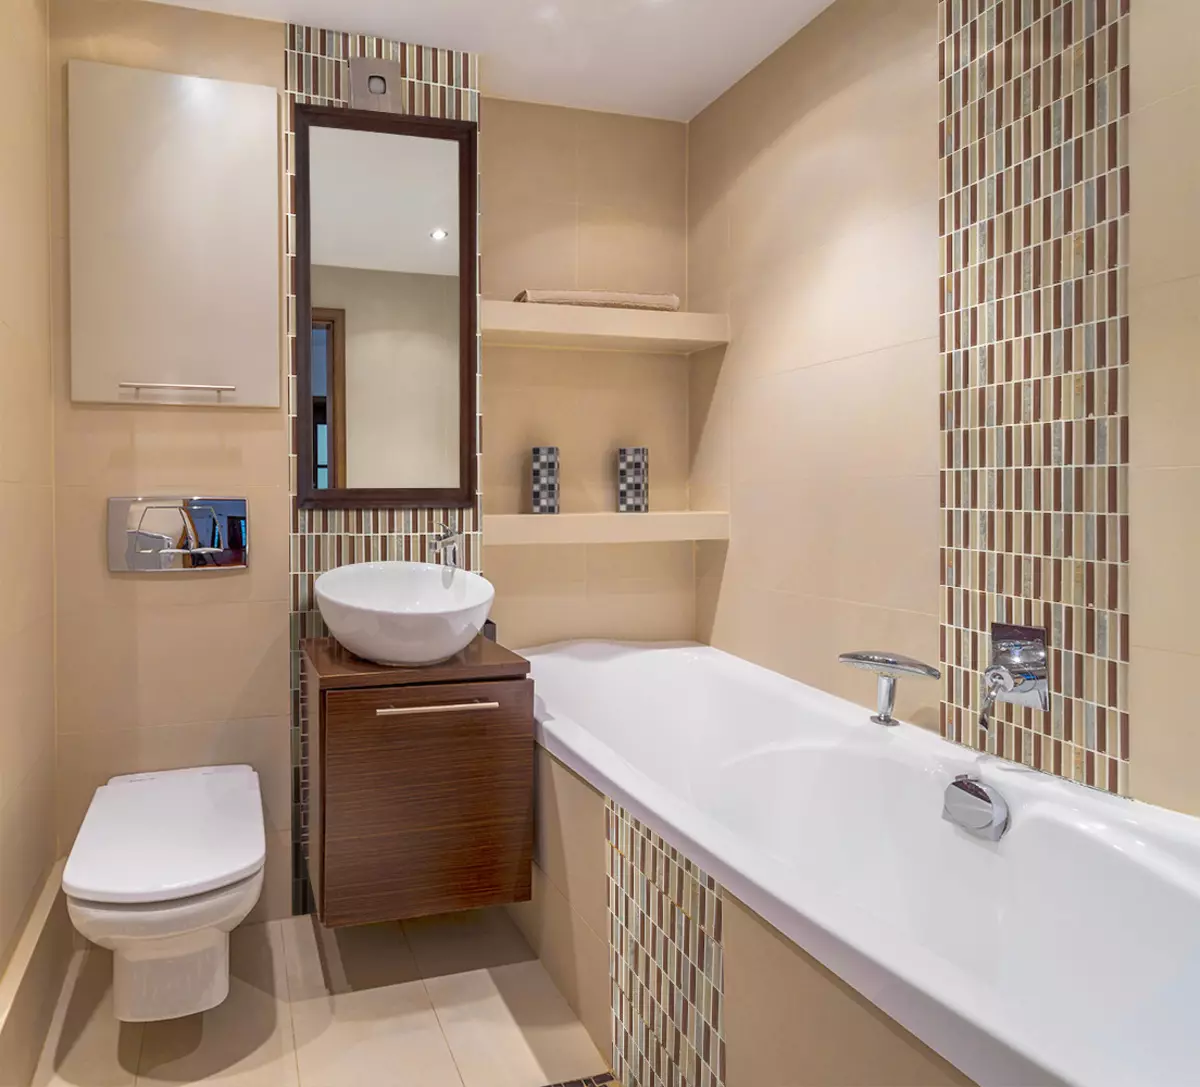 עיצוב אמבטיה בשילוב עם שירותים מרובע 3. M (76 תמונות): עיצוב פנים חדר אמבטיה עם מכונת כביסה, הנחת חדר קטן 10068_64